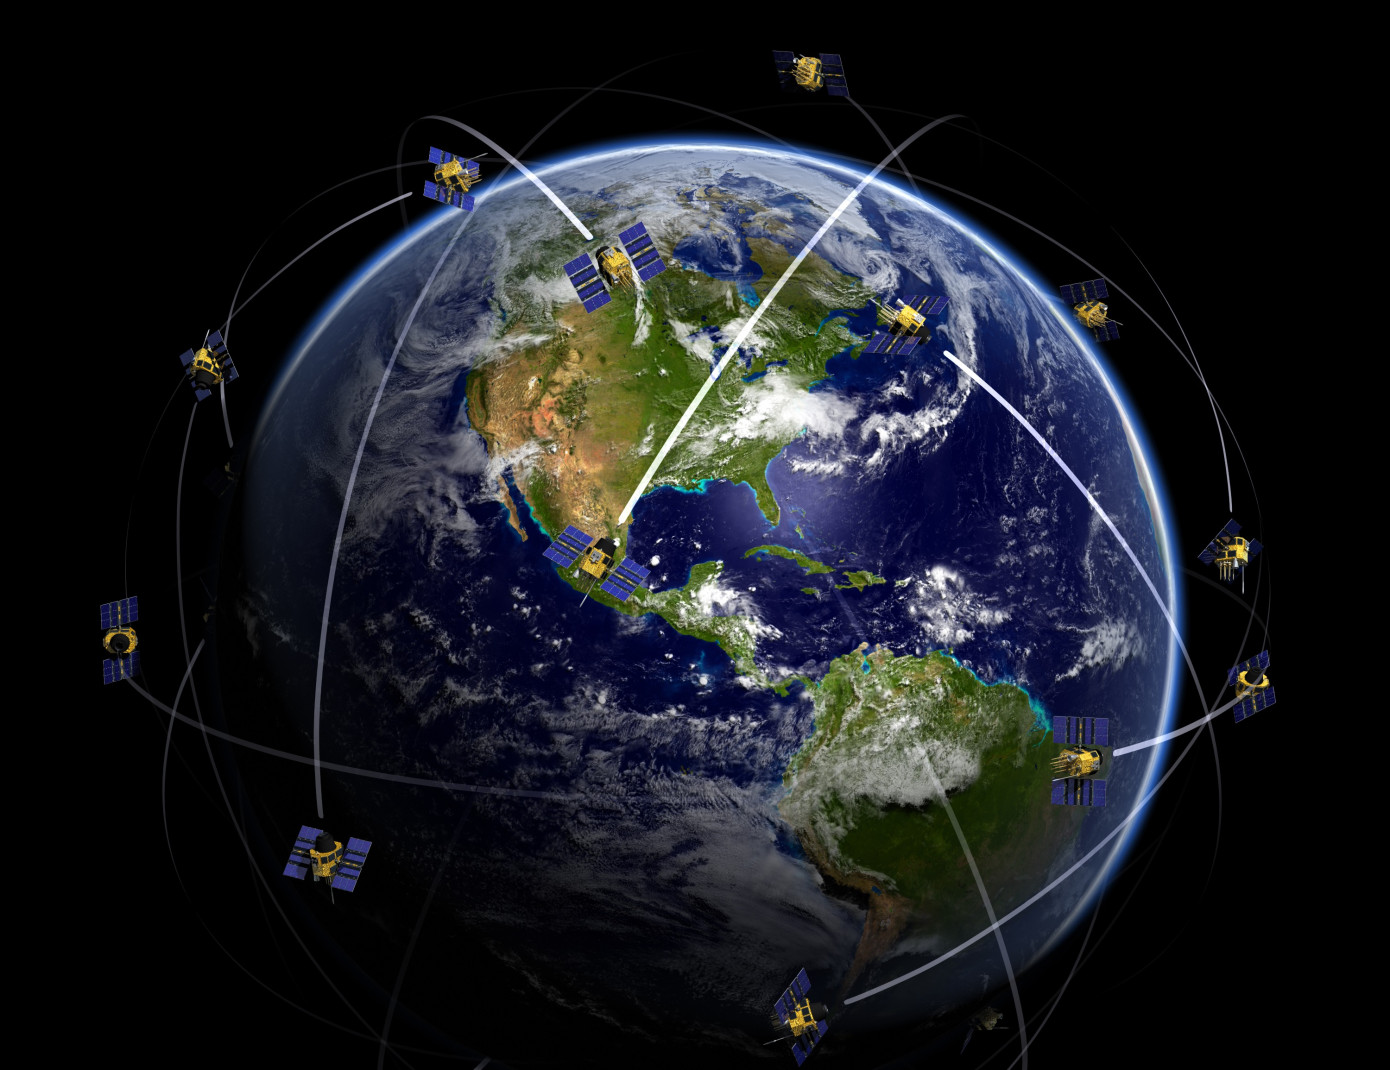 成功服务40颗卫星、建设近30个地面站，航天驭星成为商业卫星测控赛道领头羊 - 初创公司 - 创业邦